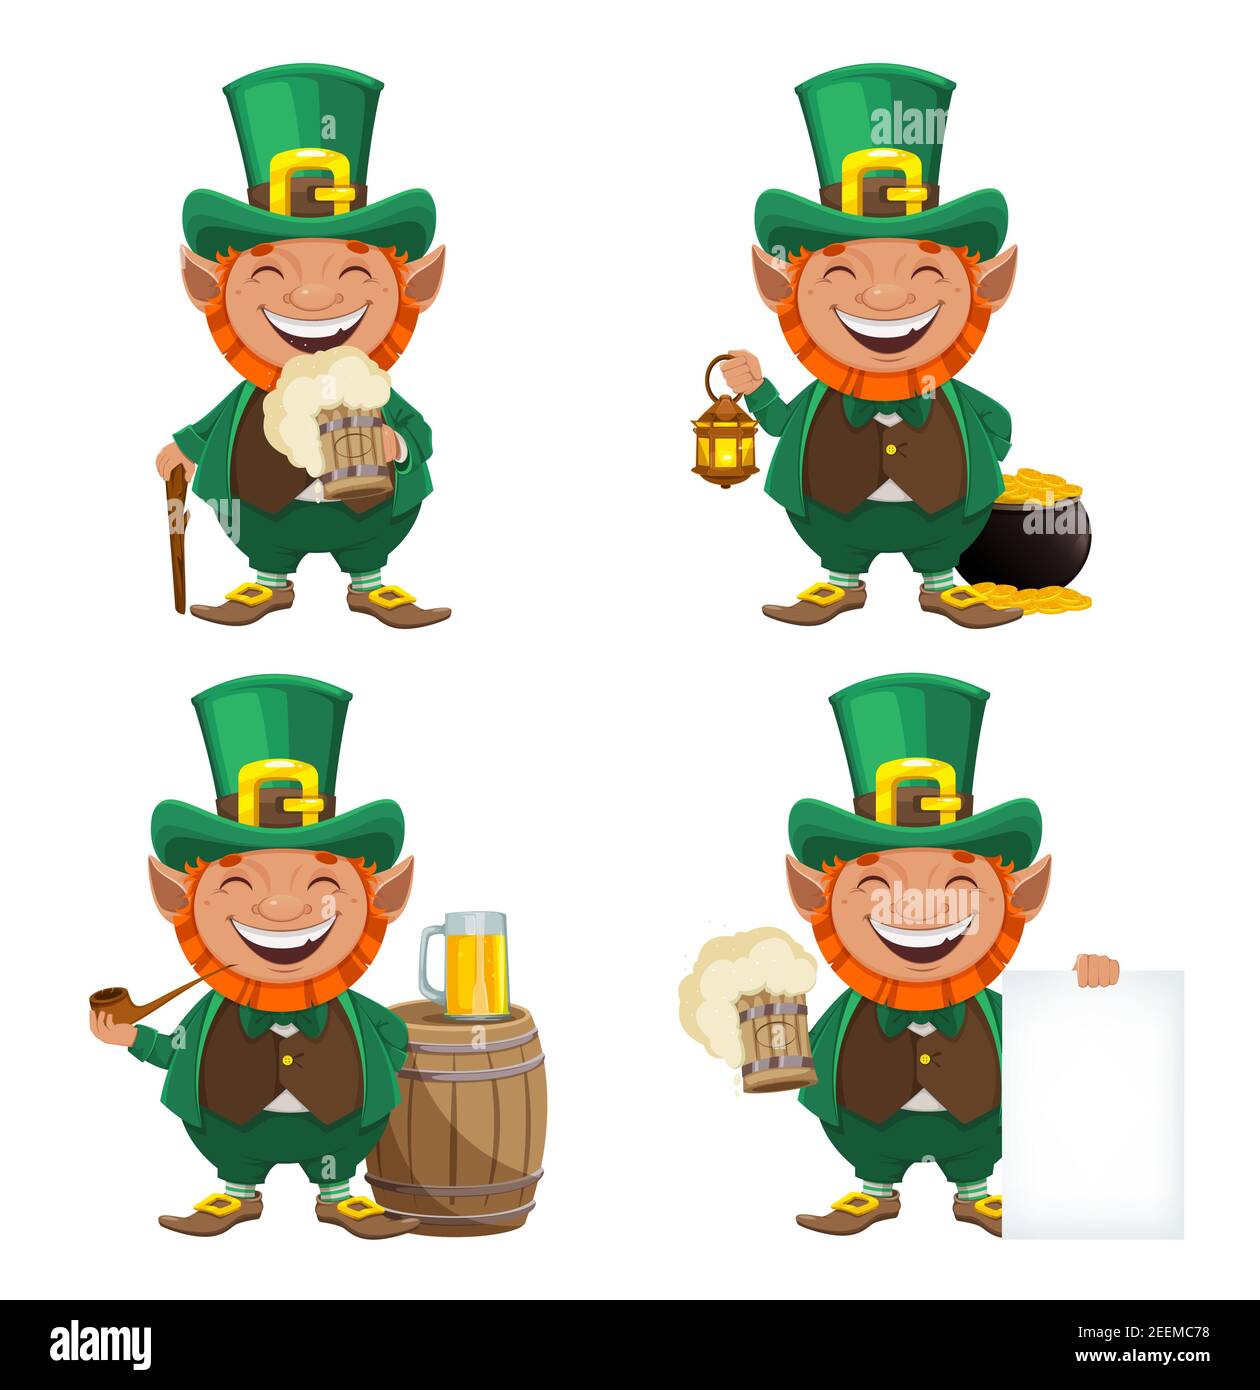 Stock Vektor Kobold. Glückwunschkarte zum St. Patrick's Day. Fröhliche Kobold Zeichentrickfigur, Satz von vier Posen Stock Vektor